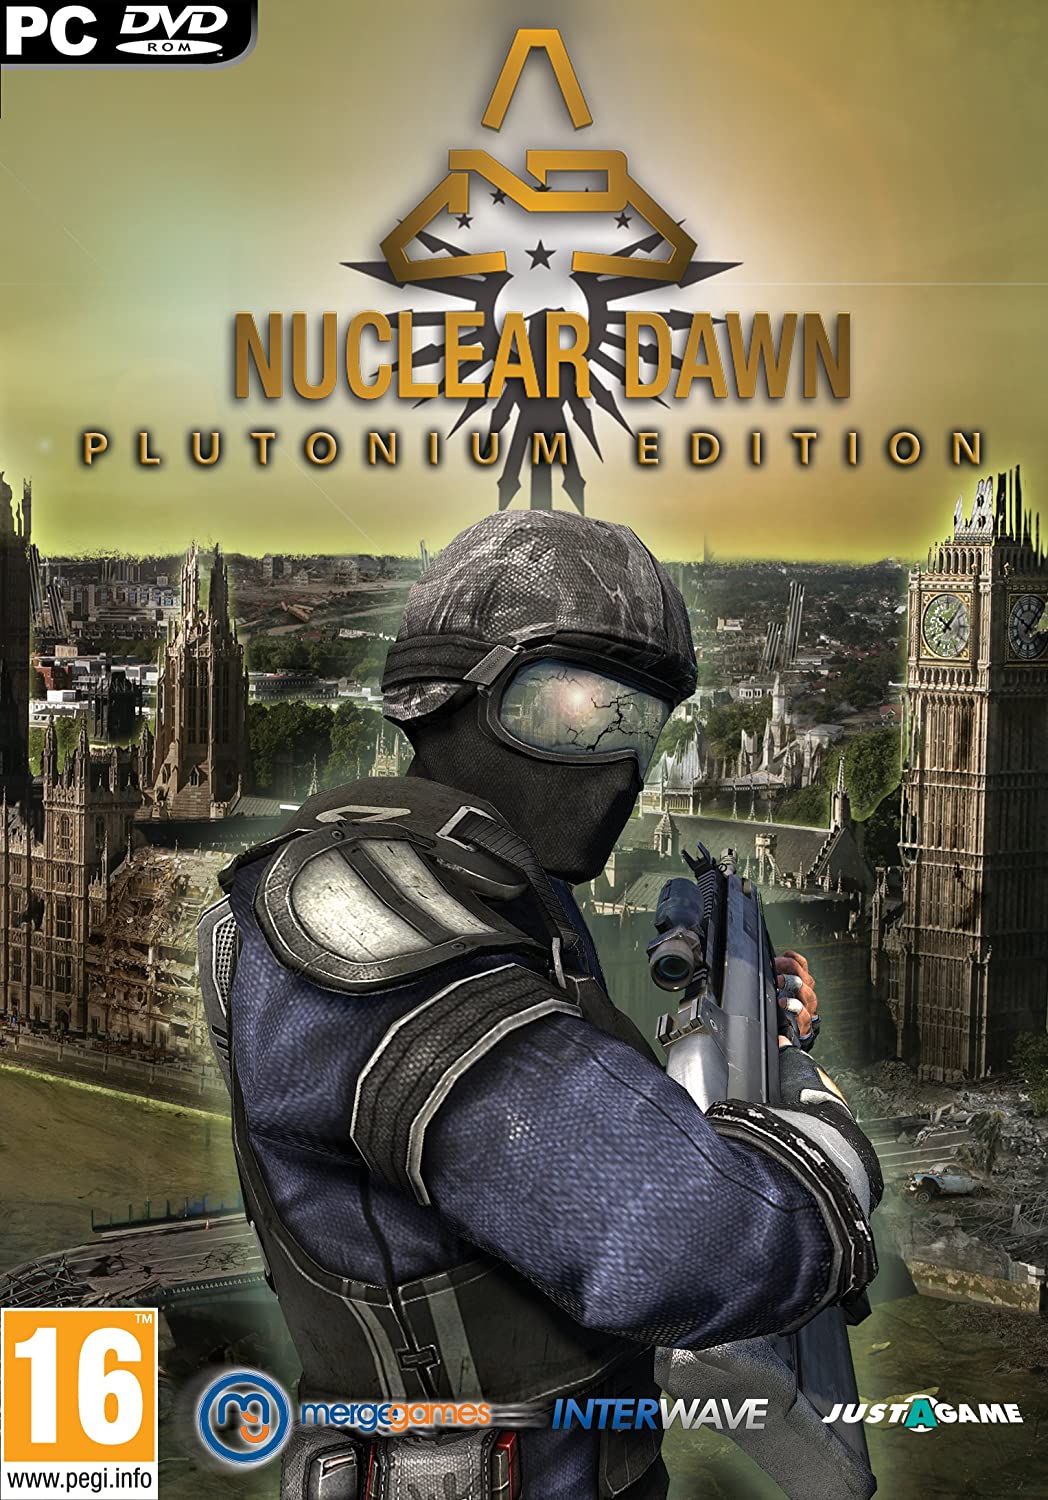 Nuclear Dawn: Plutonium Edition (PC-DVD)